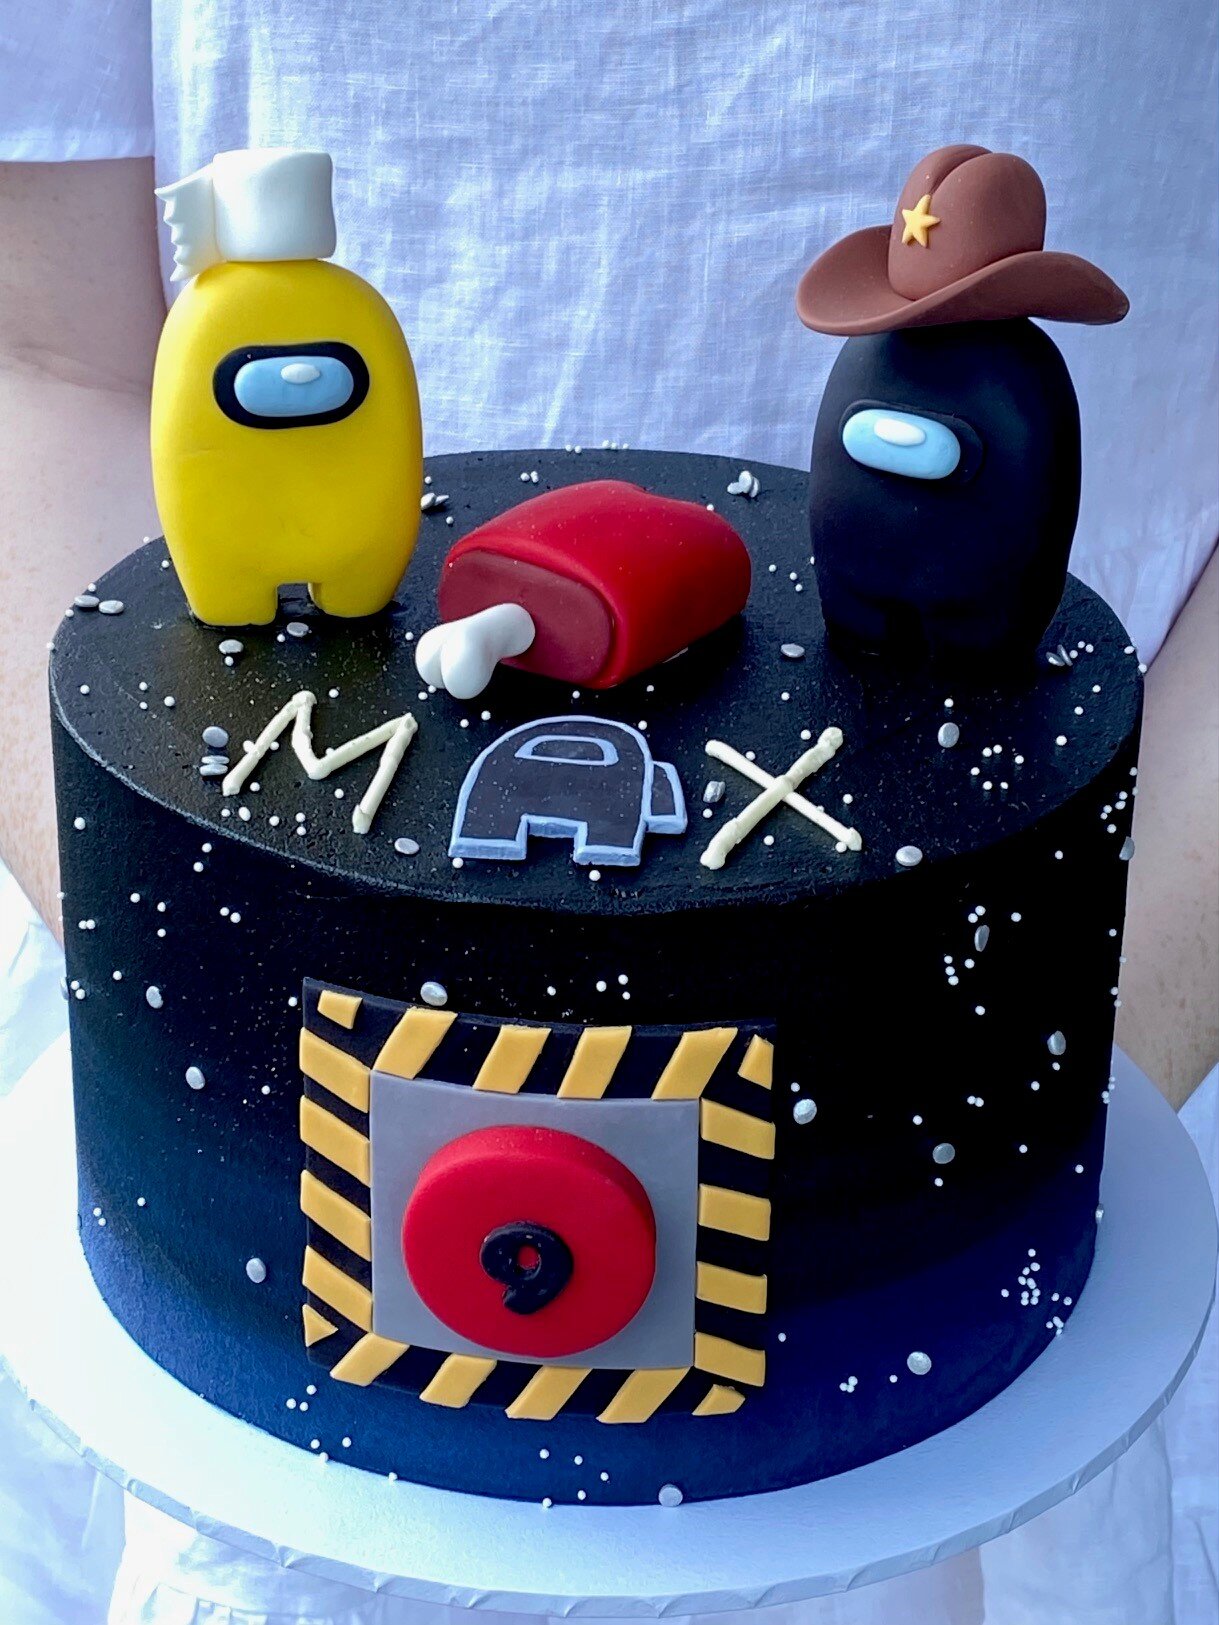 vanillapodspecialtycakes-brisbanecakes-noveltycakes-buttercreamcake-cupcakes-kidscakes-birthdaycakes-customcakes (27).jpg